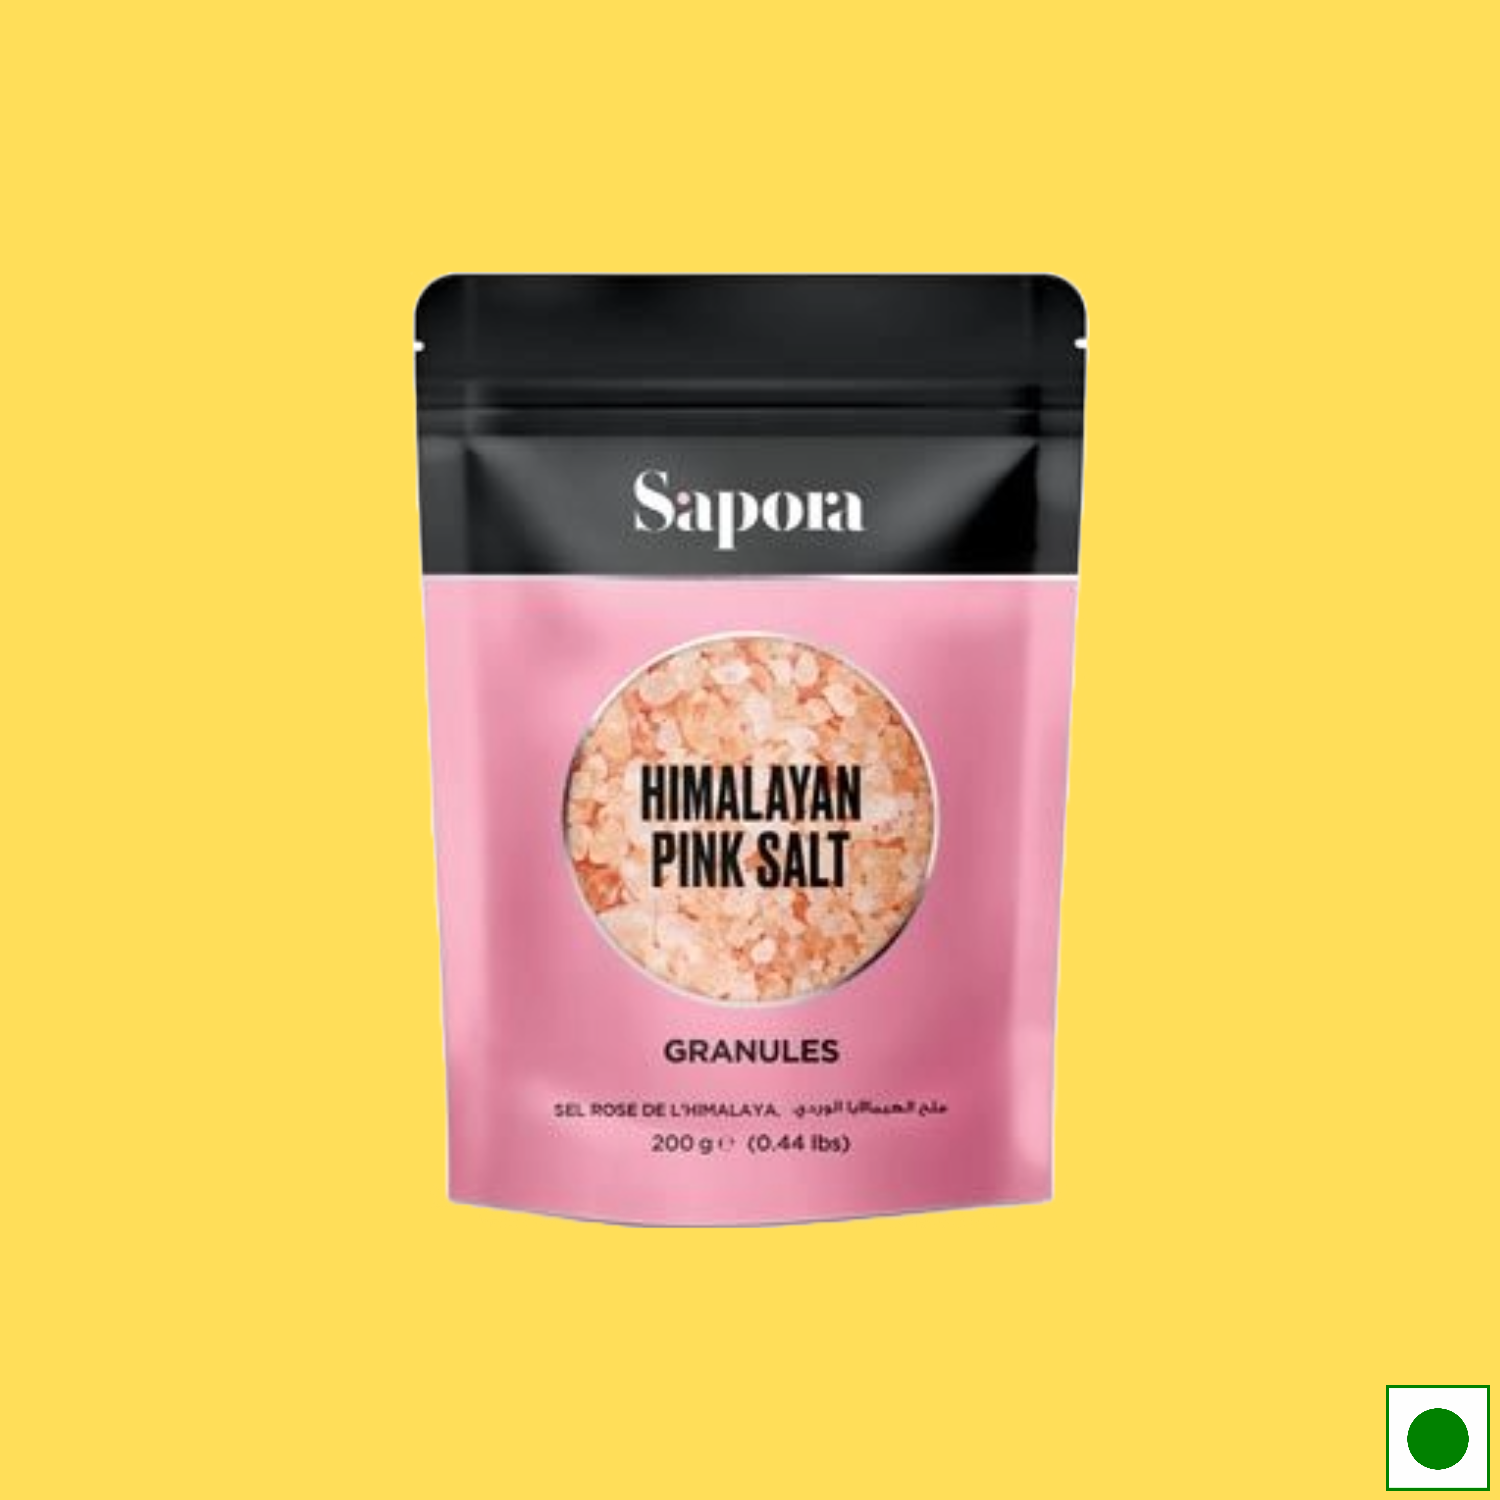 Sapora Himalayan Pink Salt Granules, 200g (Imported)